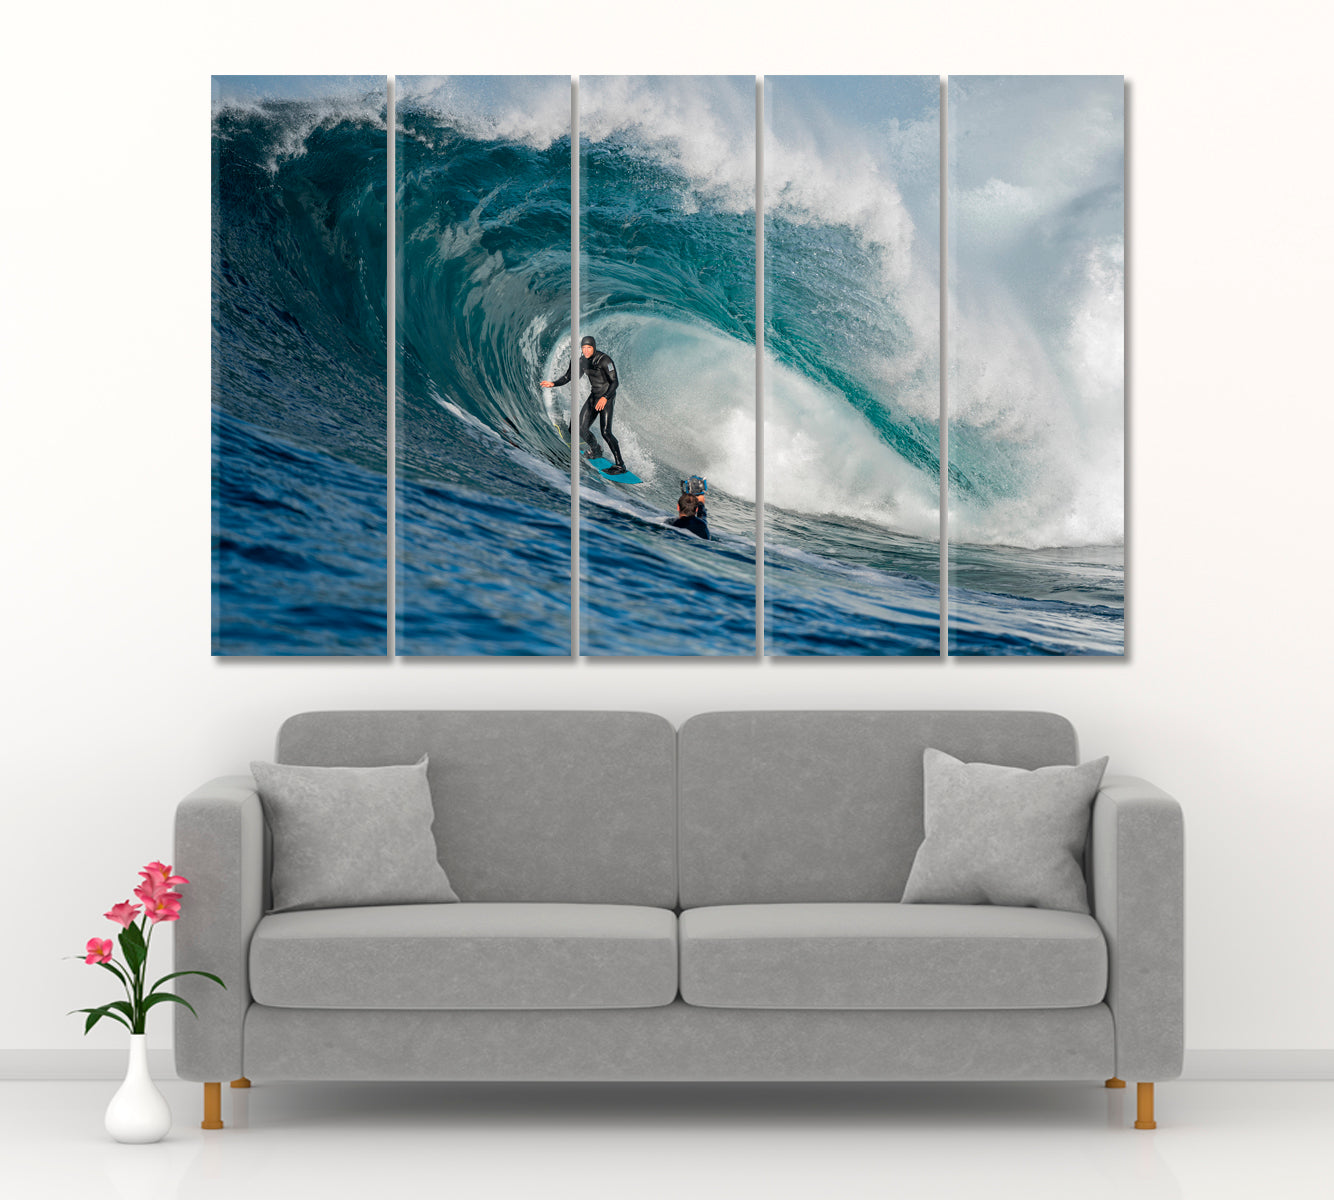 BIG WAVES Surfer Motivation Sport Poster Print Decor Artesty 5 panels 36" x 24" 